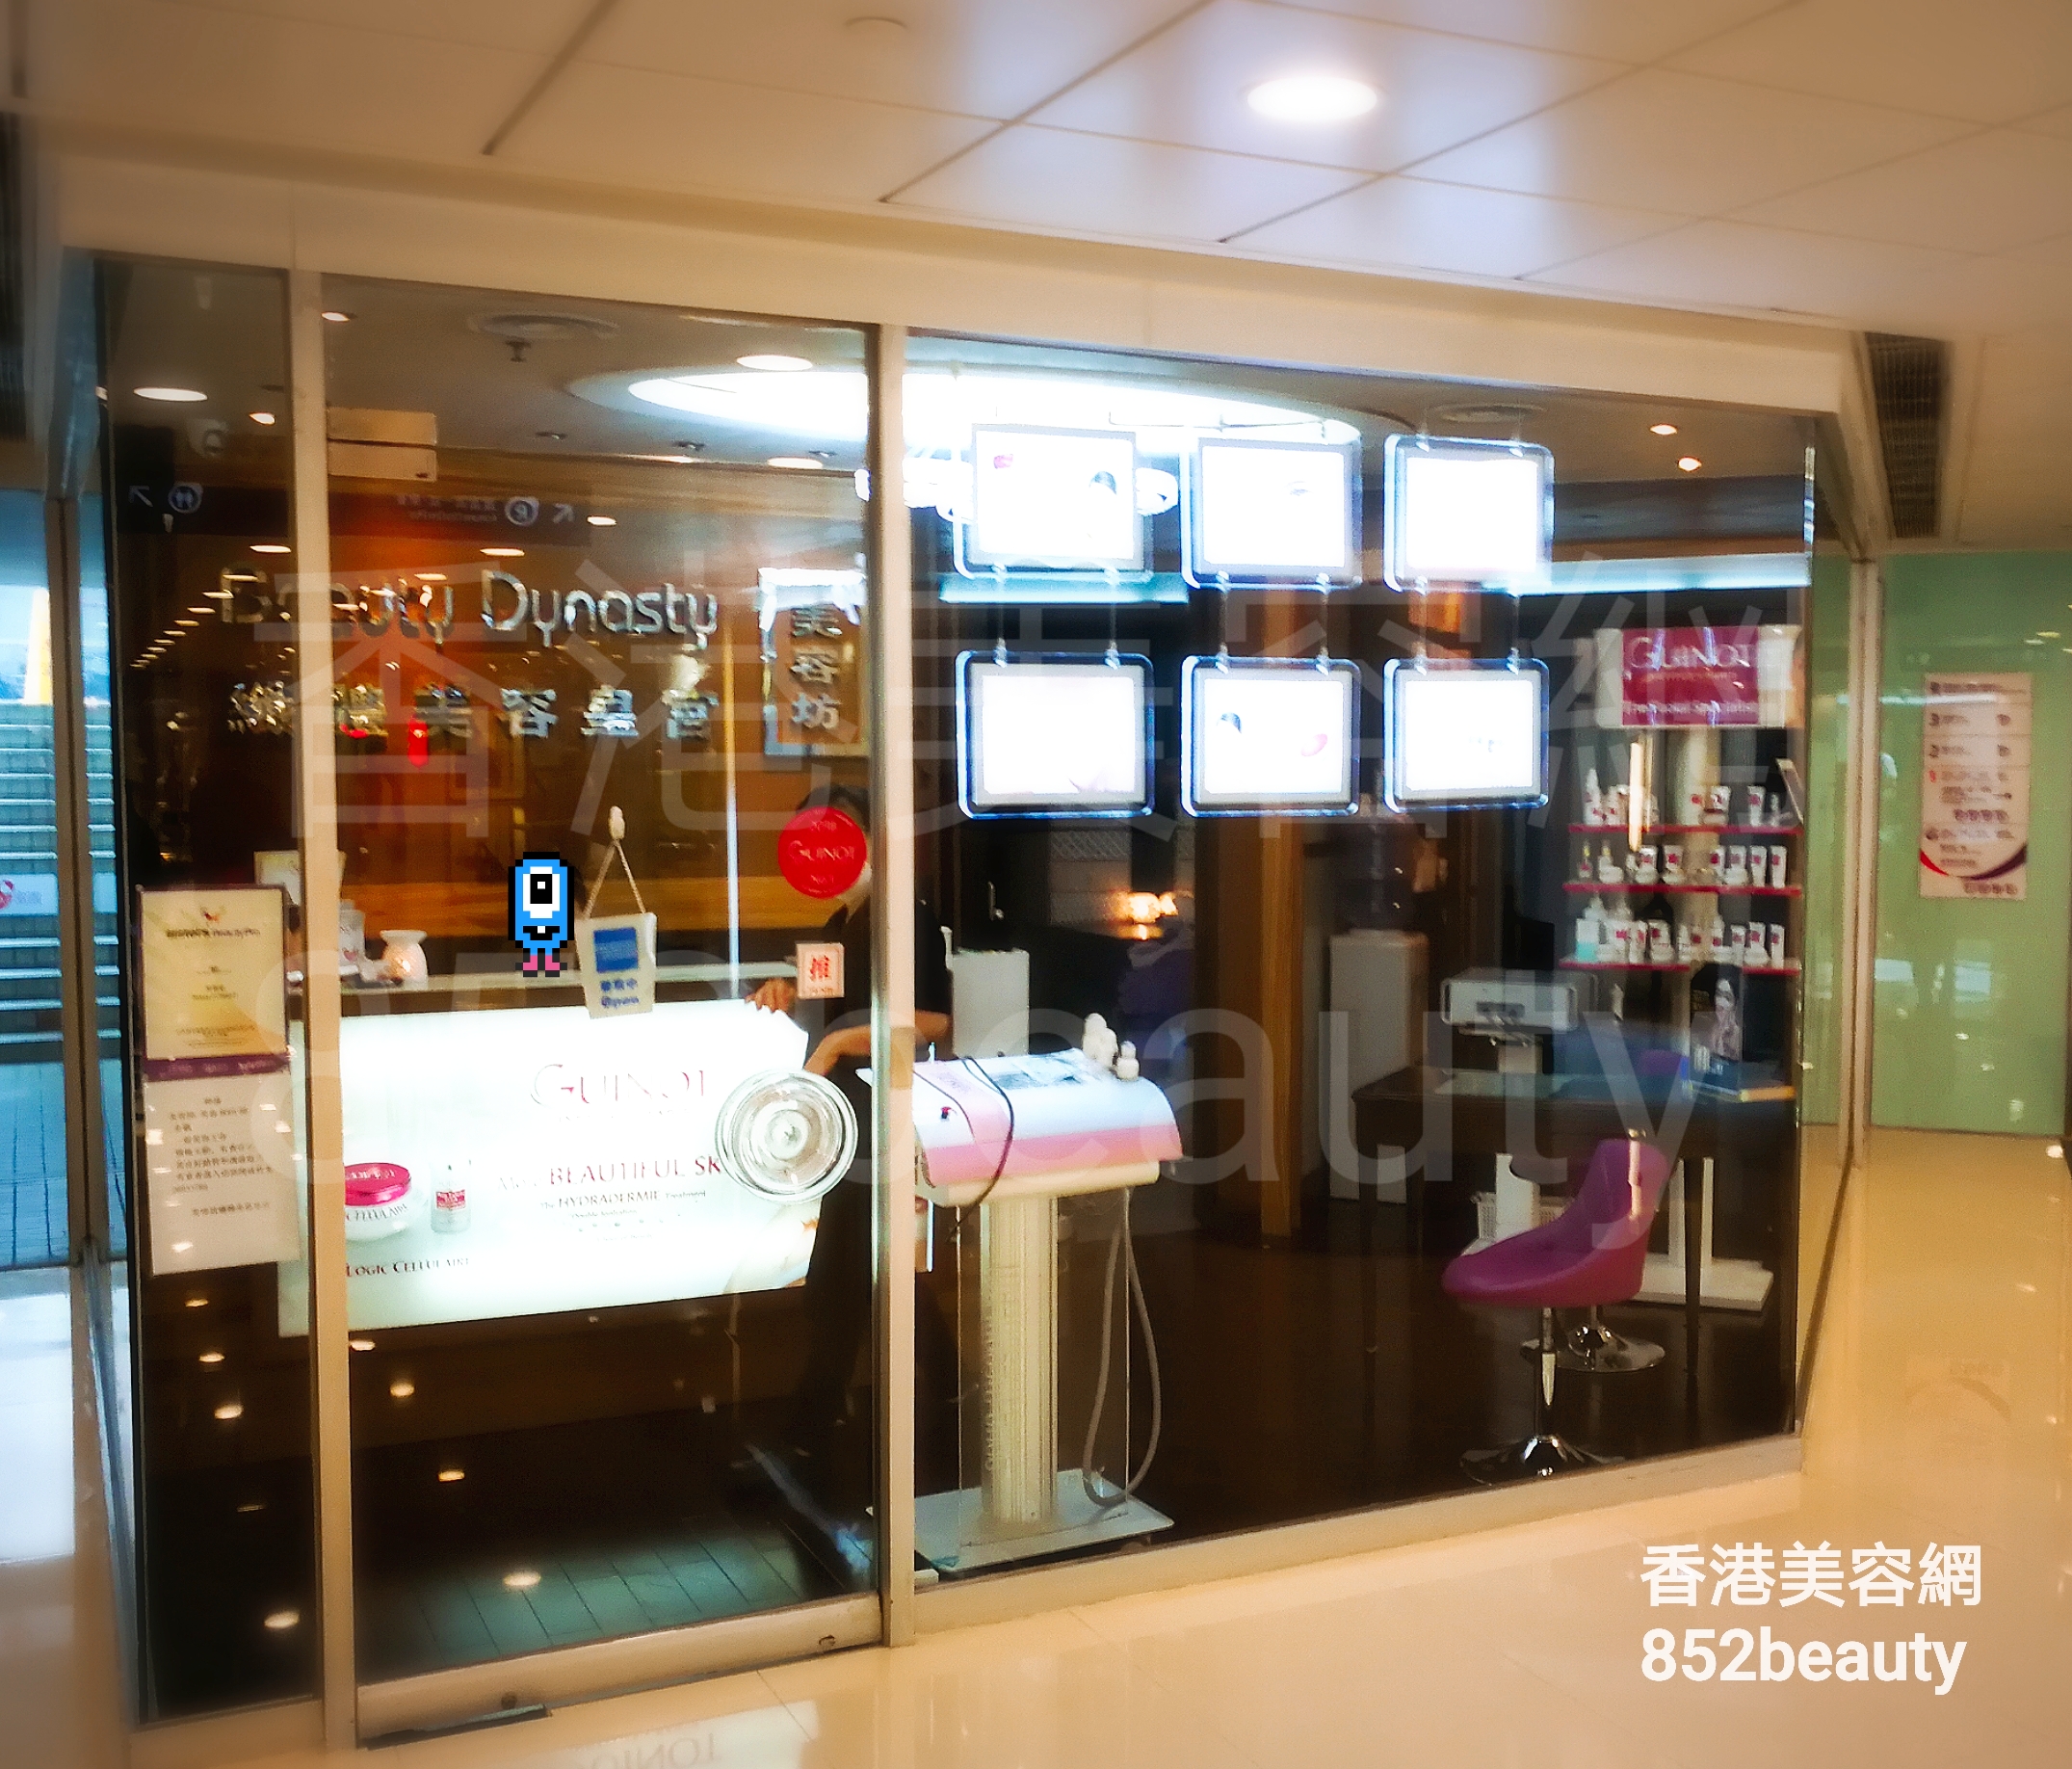 香港美容網 Hong Kong Beauty Salon 美容院 / 美容師: 纖體美容皇宮